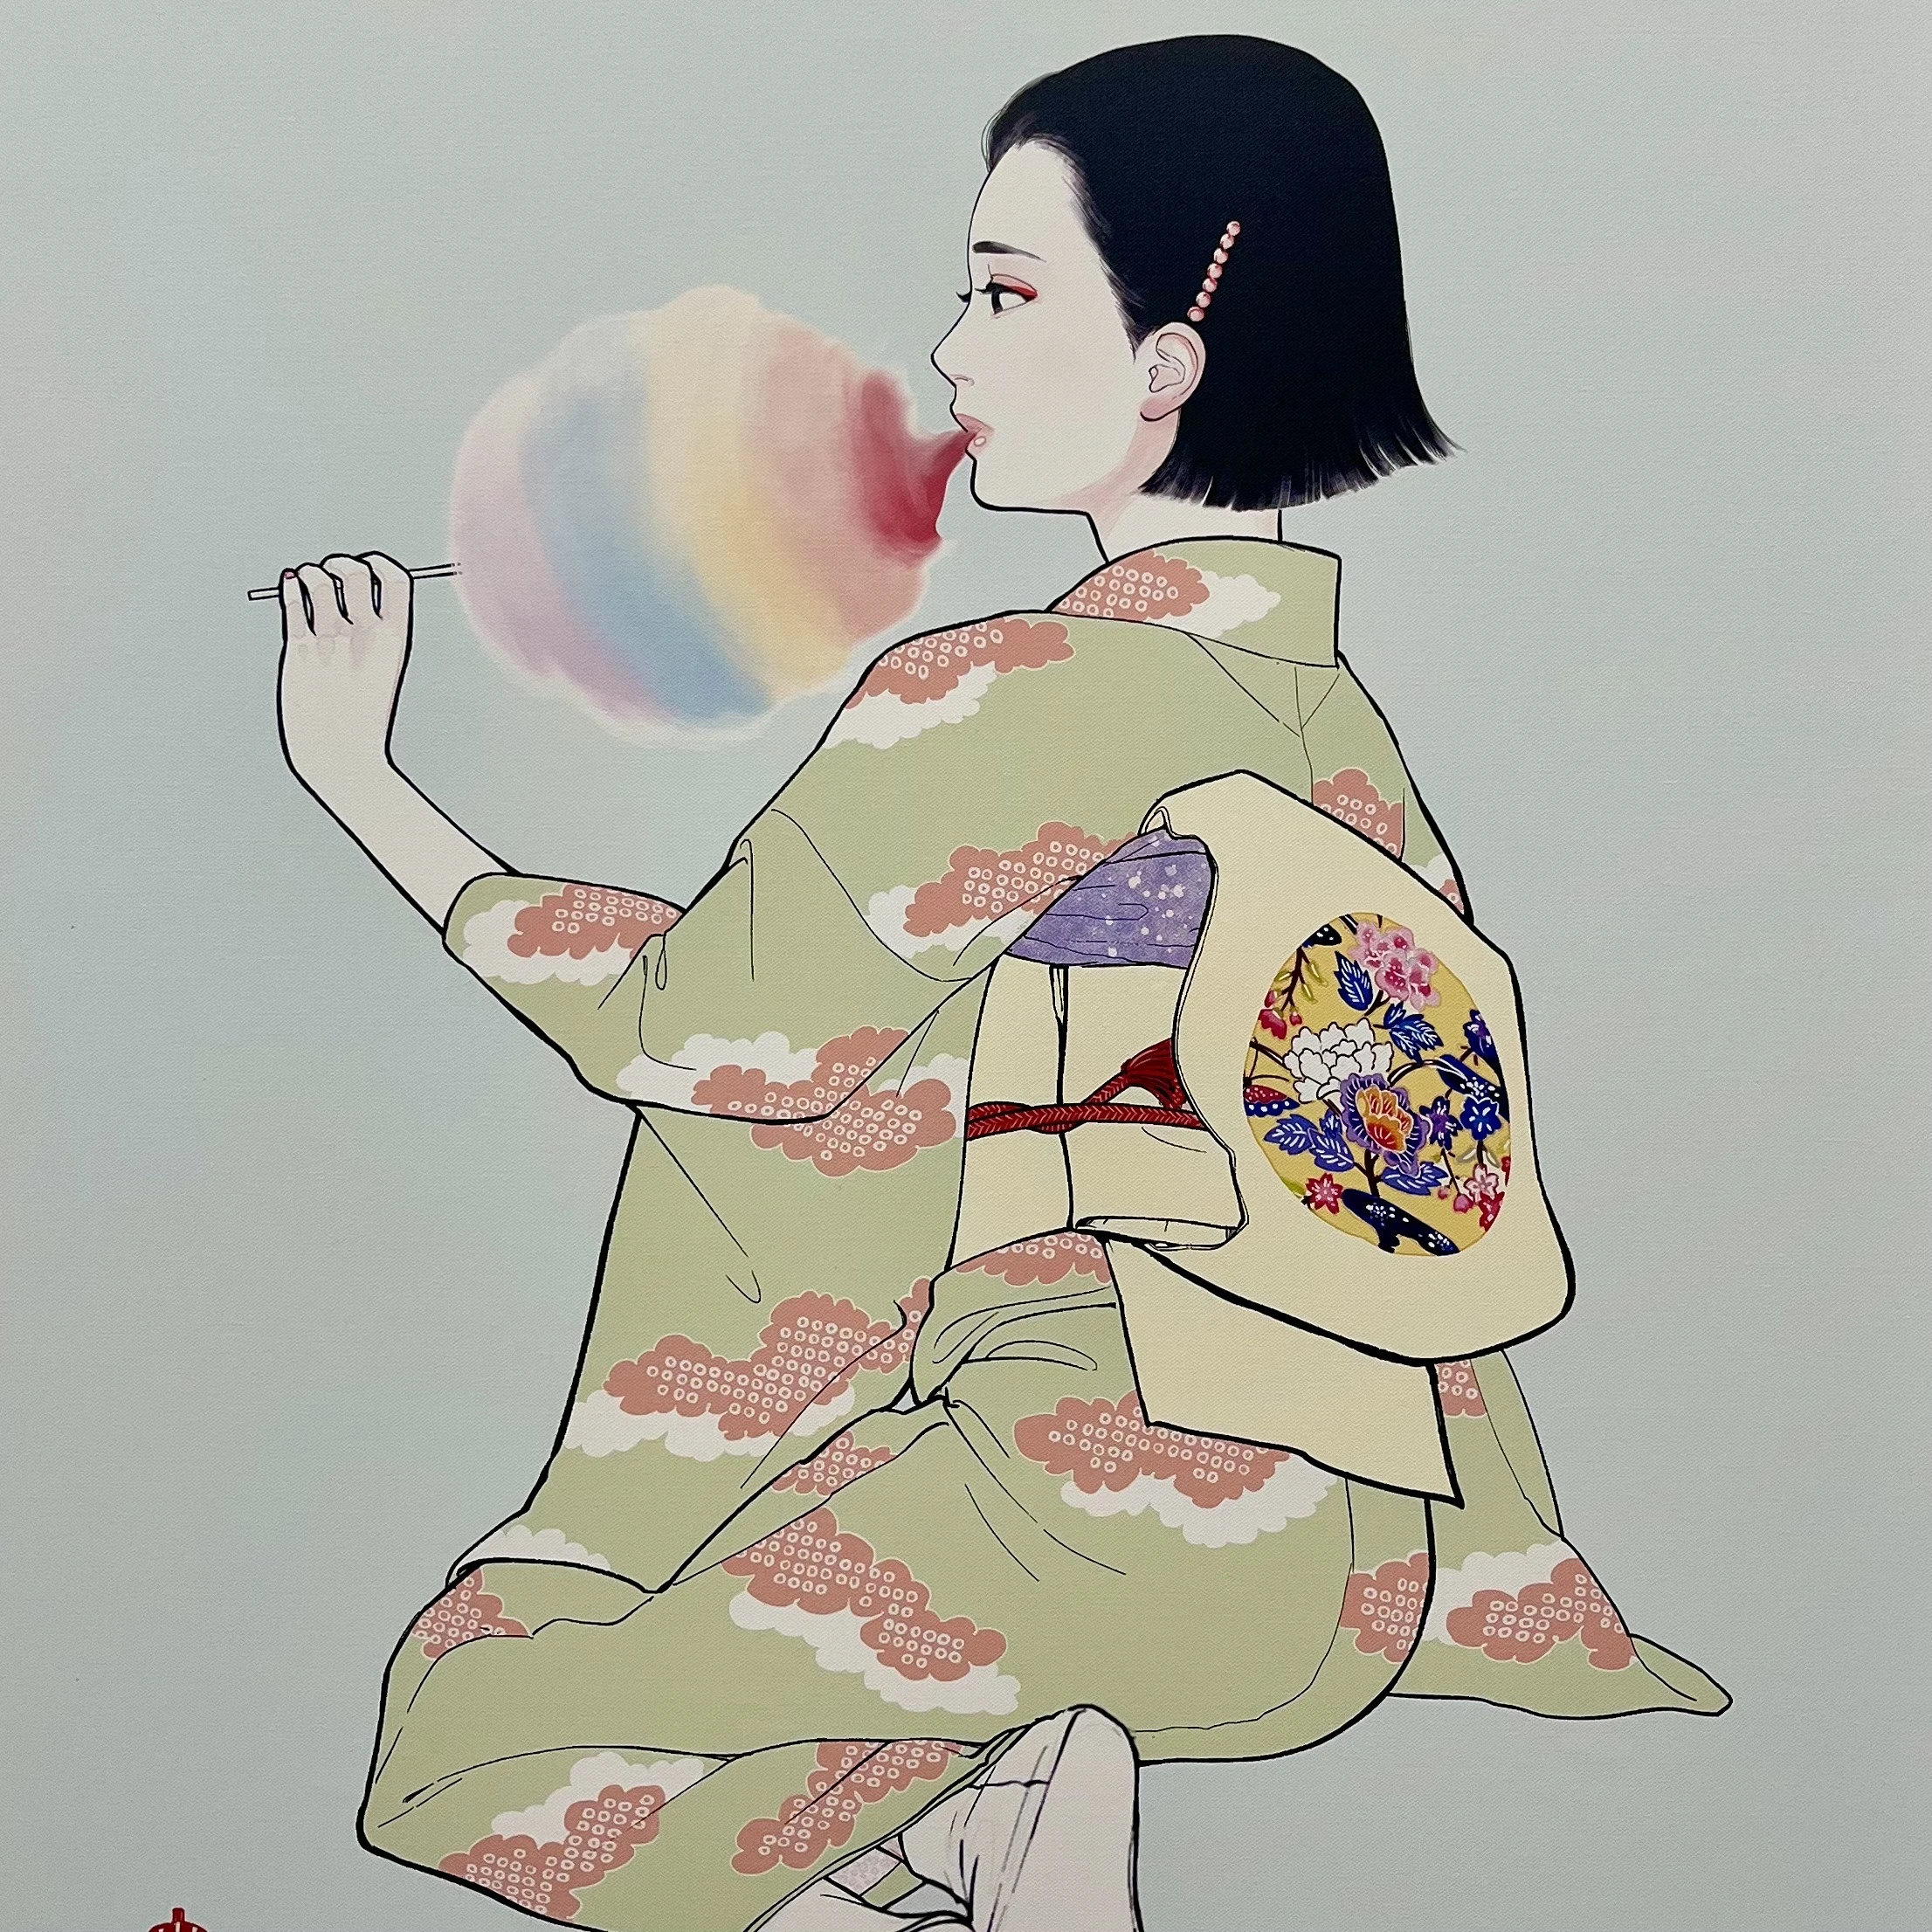 【現代アート】東村アキコのNEO美人画の世界_1_2-2